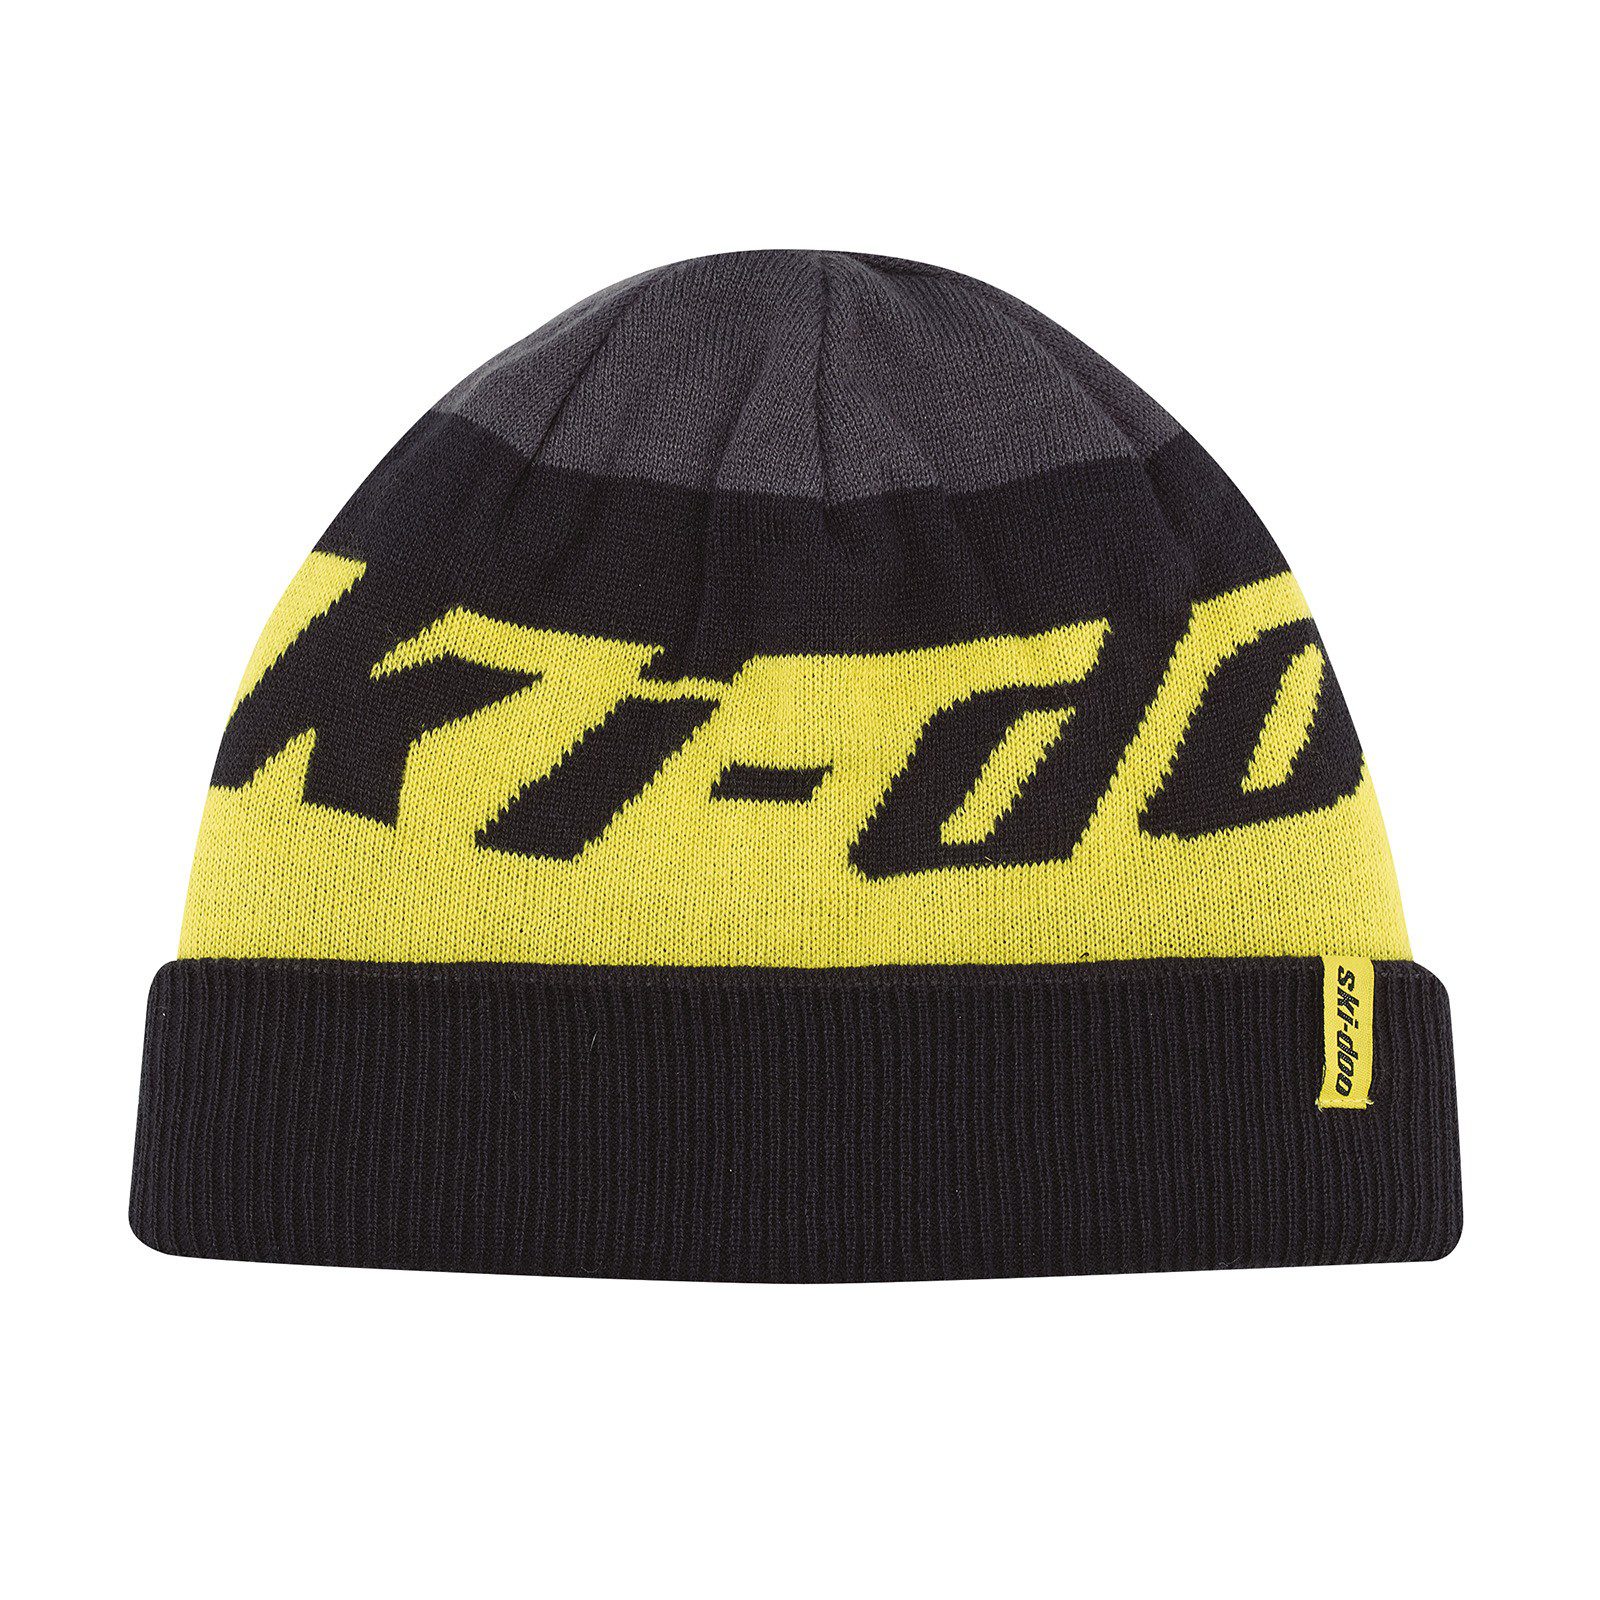 Шапка подростковая Teen Ski-Doo reversible hat